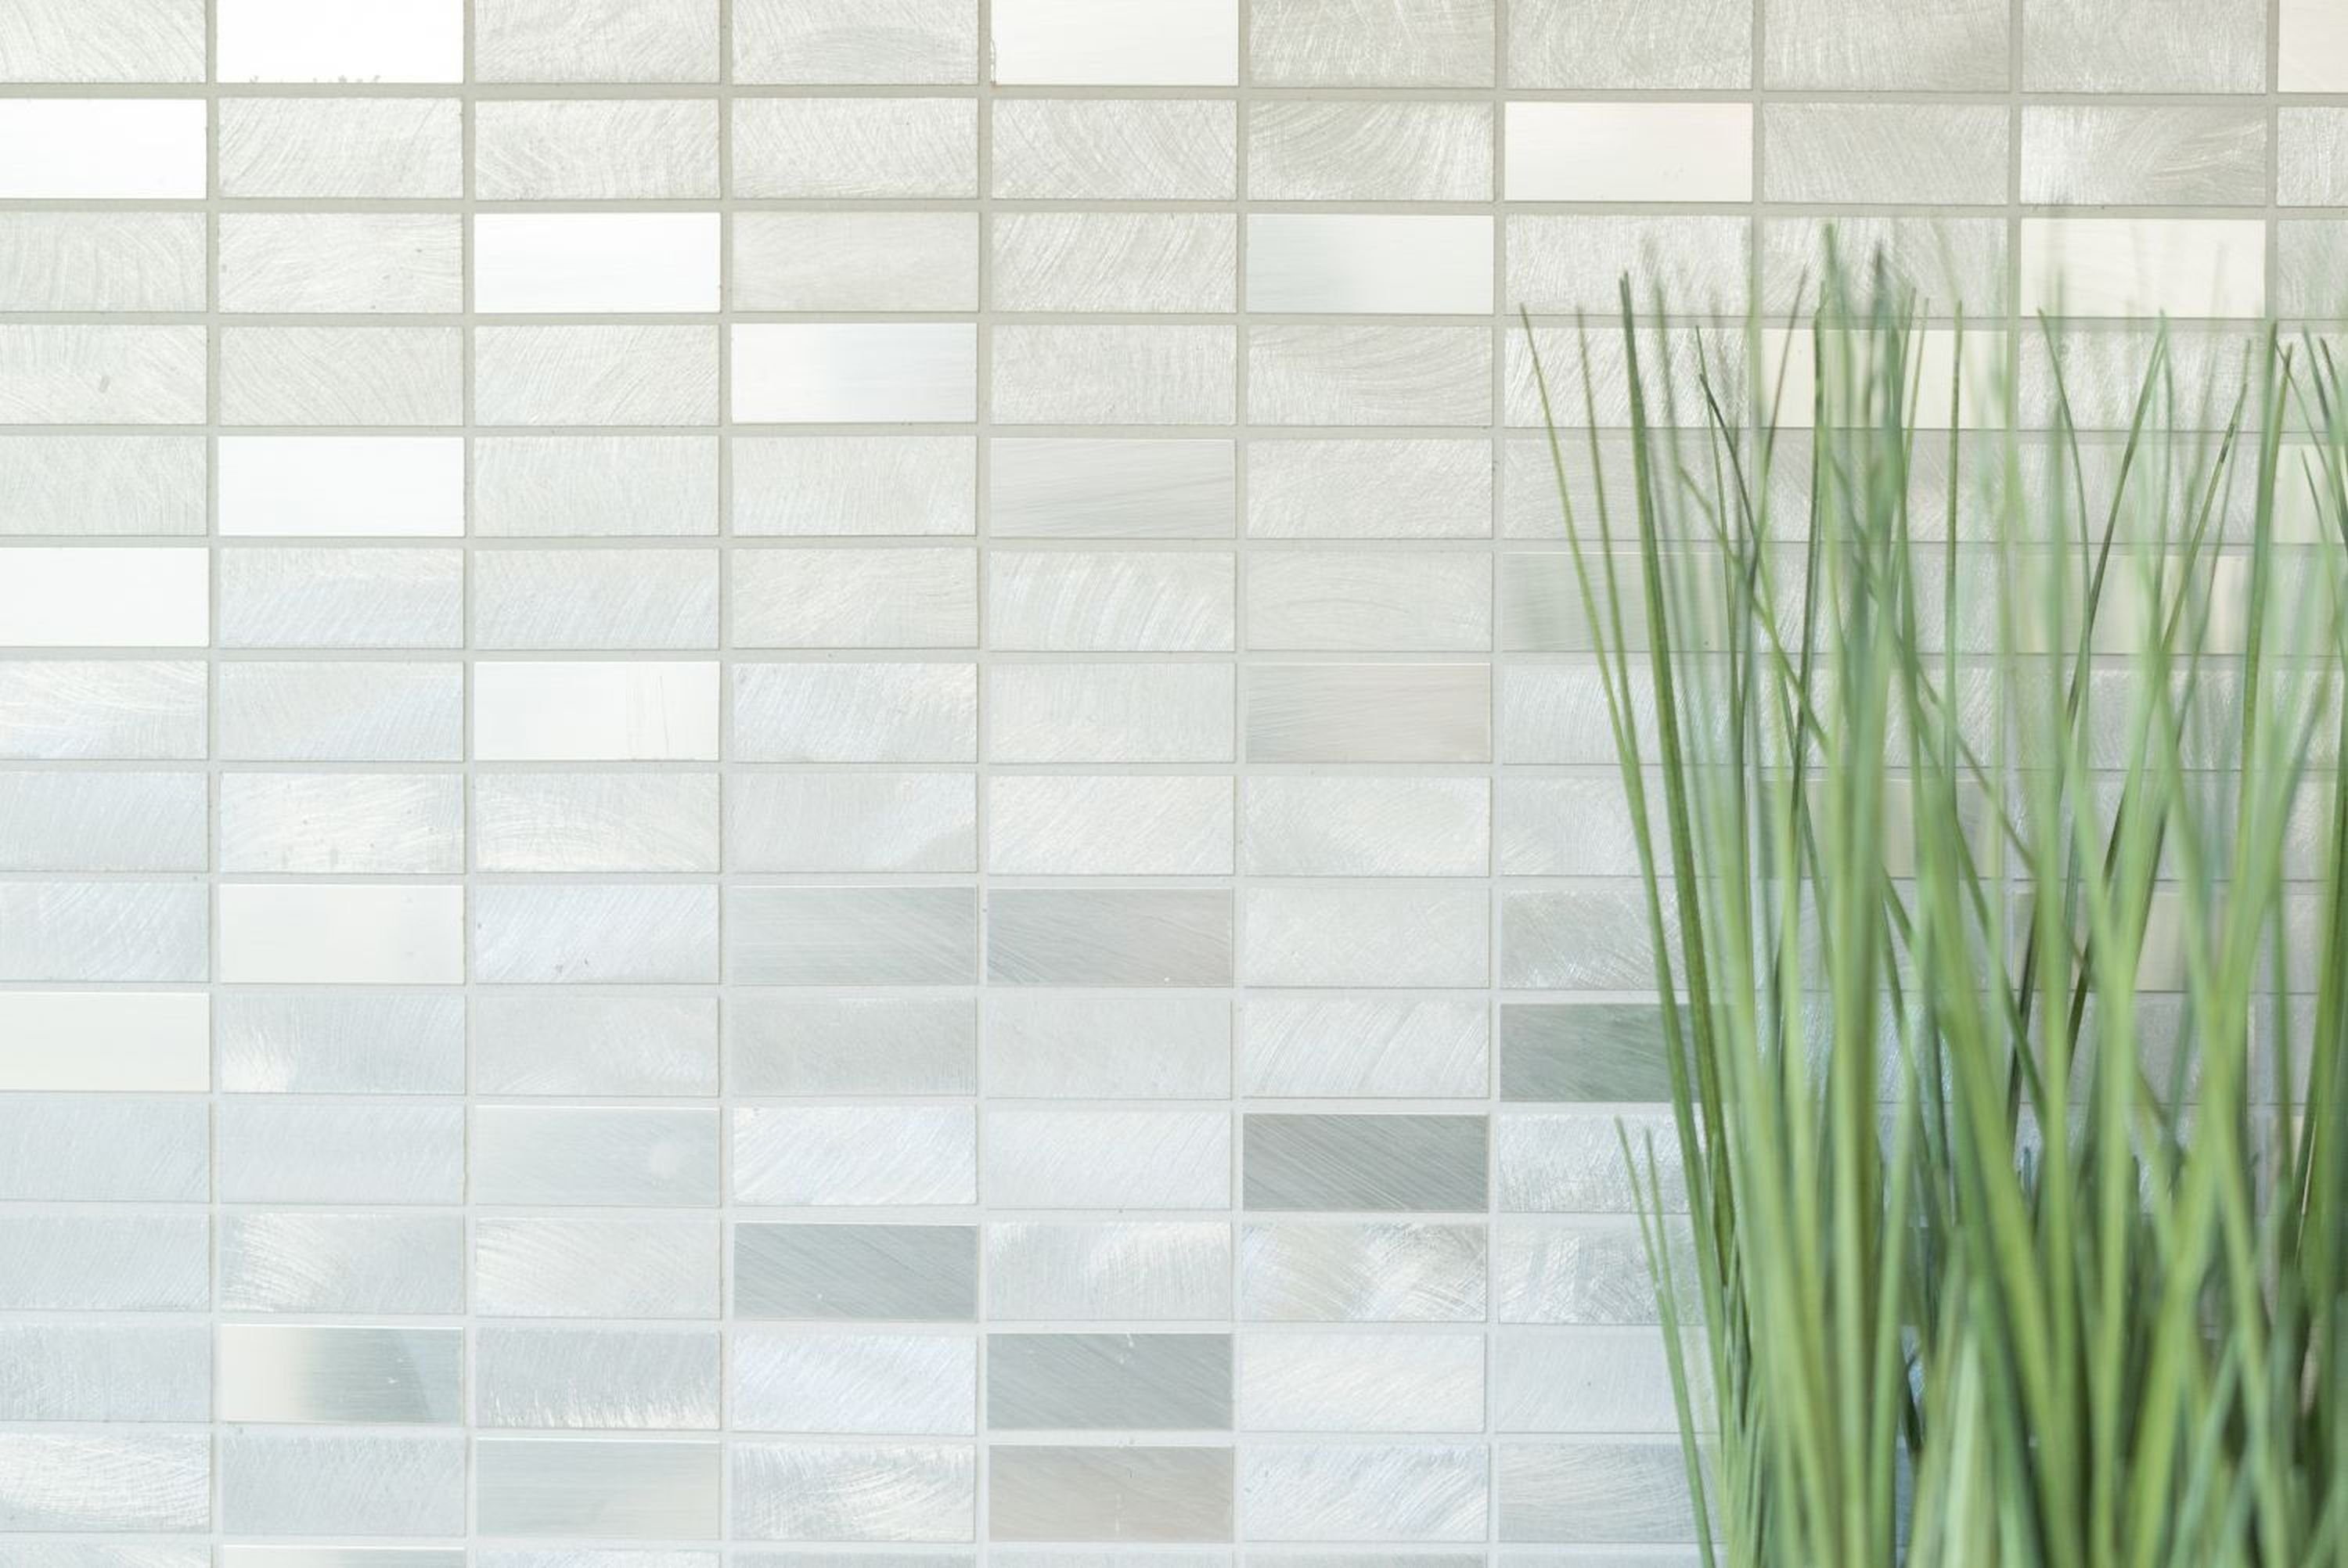 Mosani Mosaikfliesen Mosaik Fliese Aluminium poliert gebürstet Küche silber